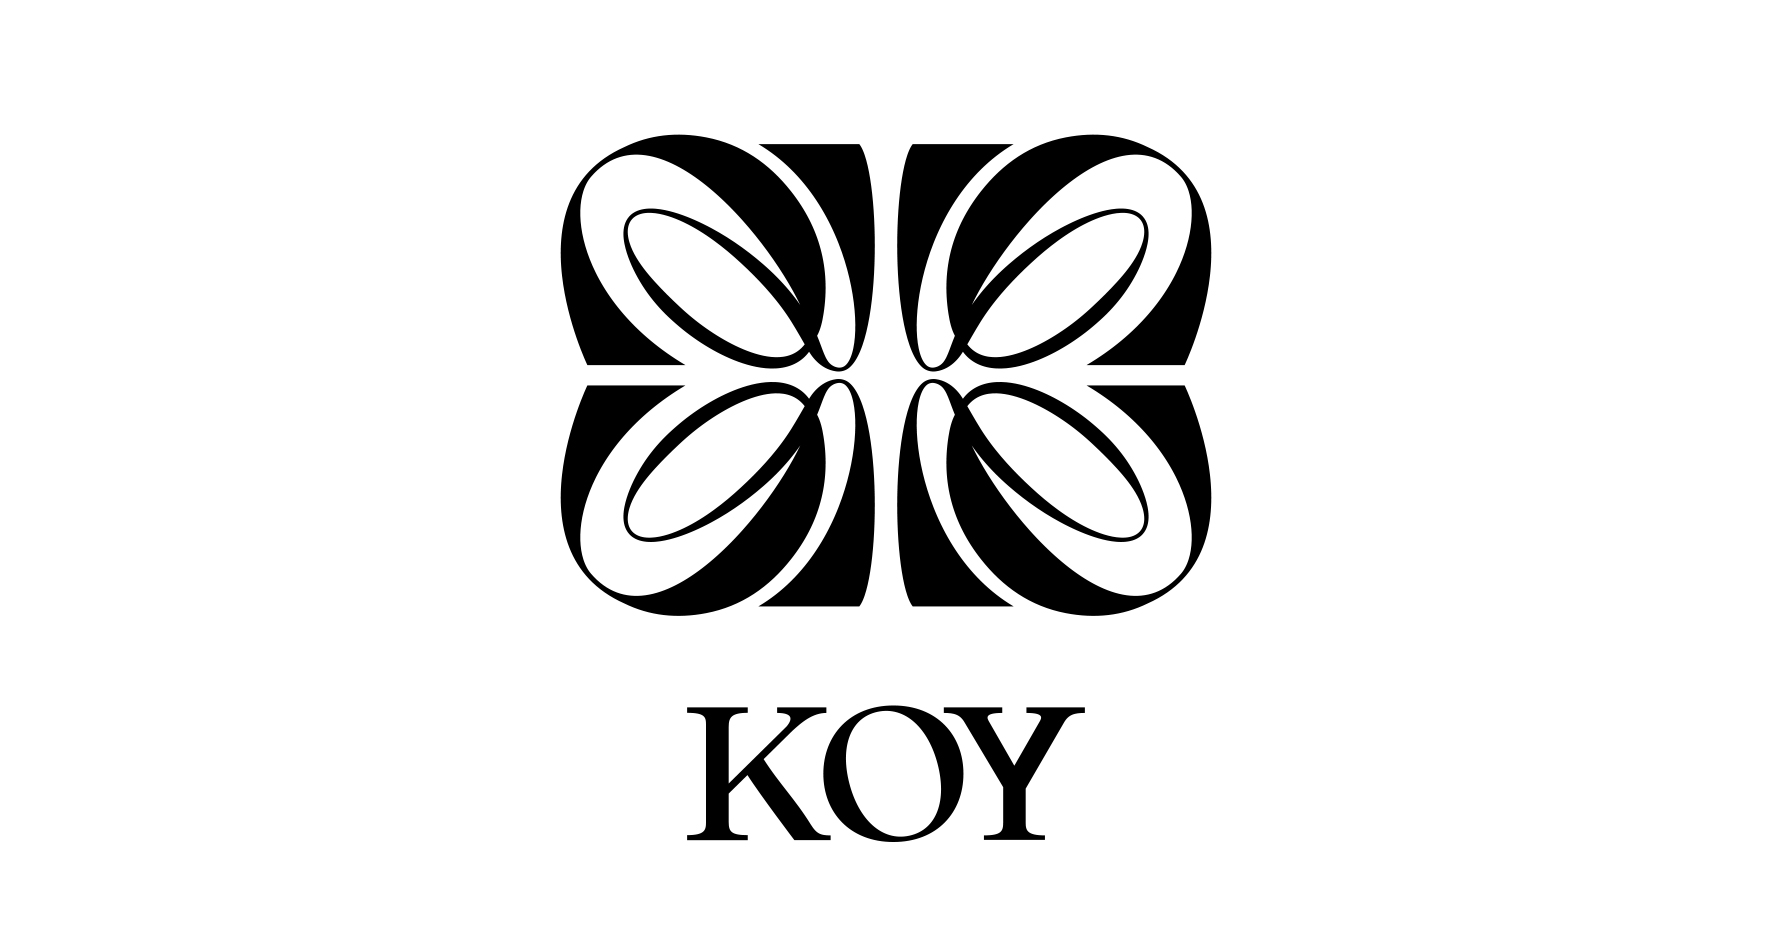 KOY Одежда и аксессуары, купить онлайн, KOY в универмаге Bolshoy